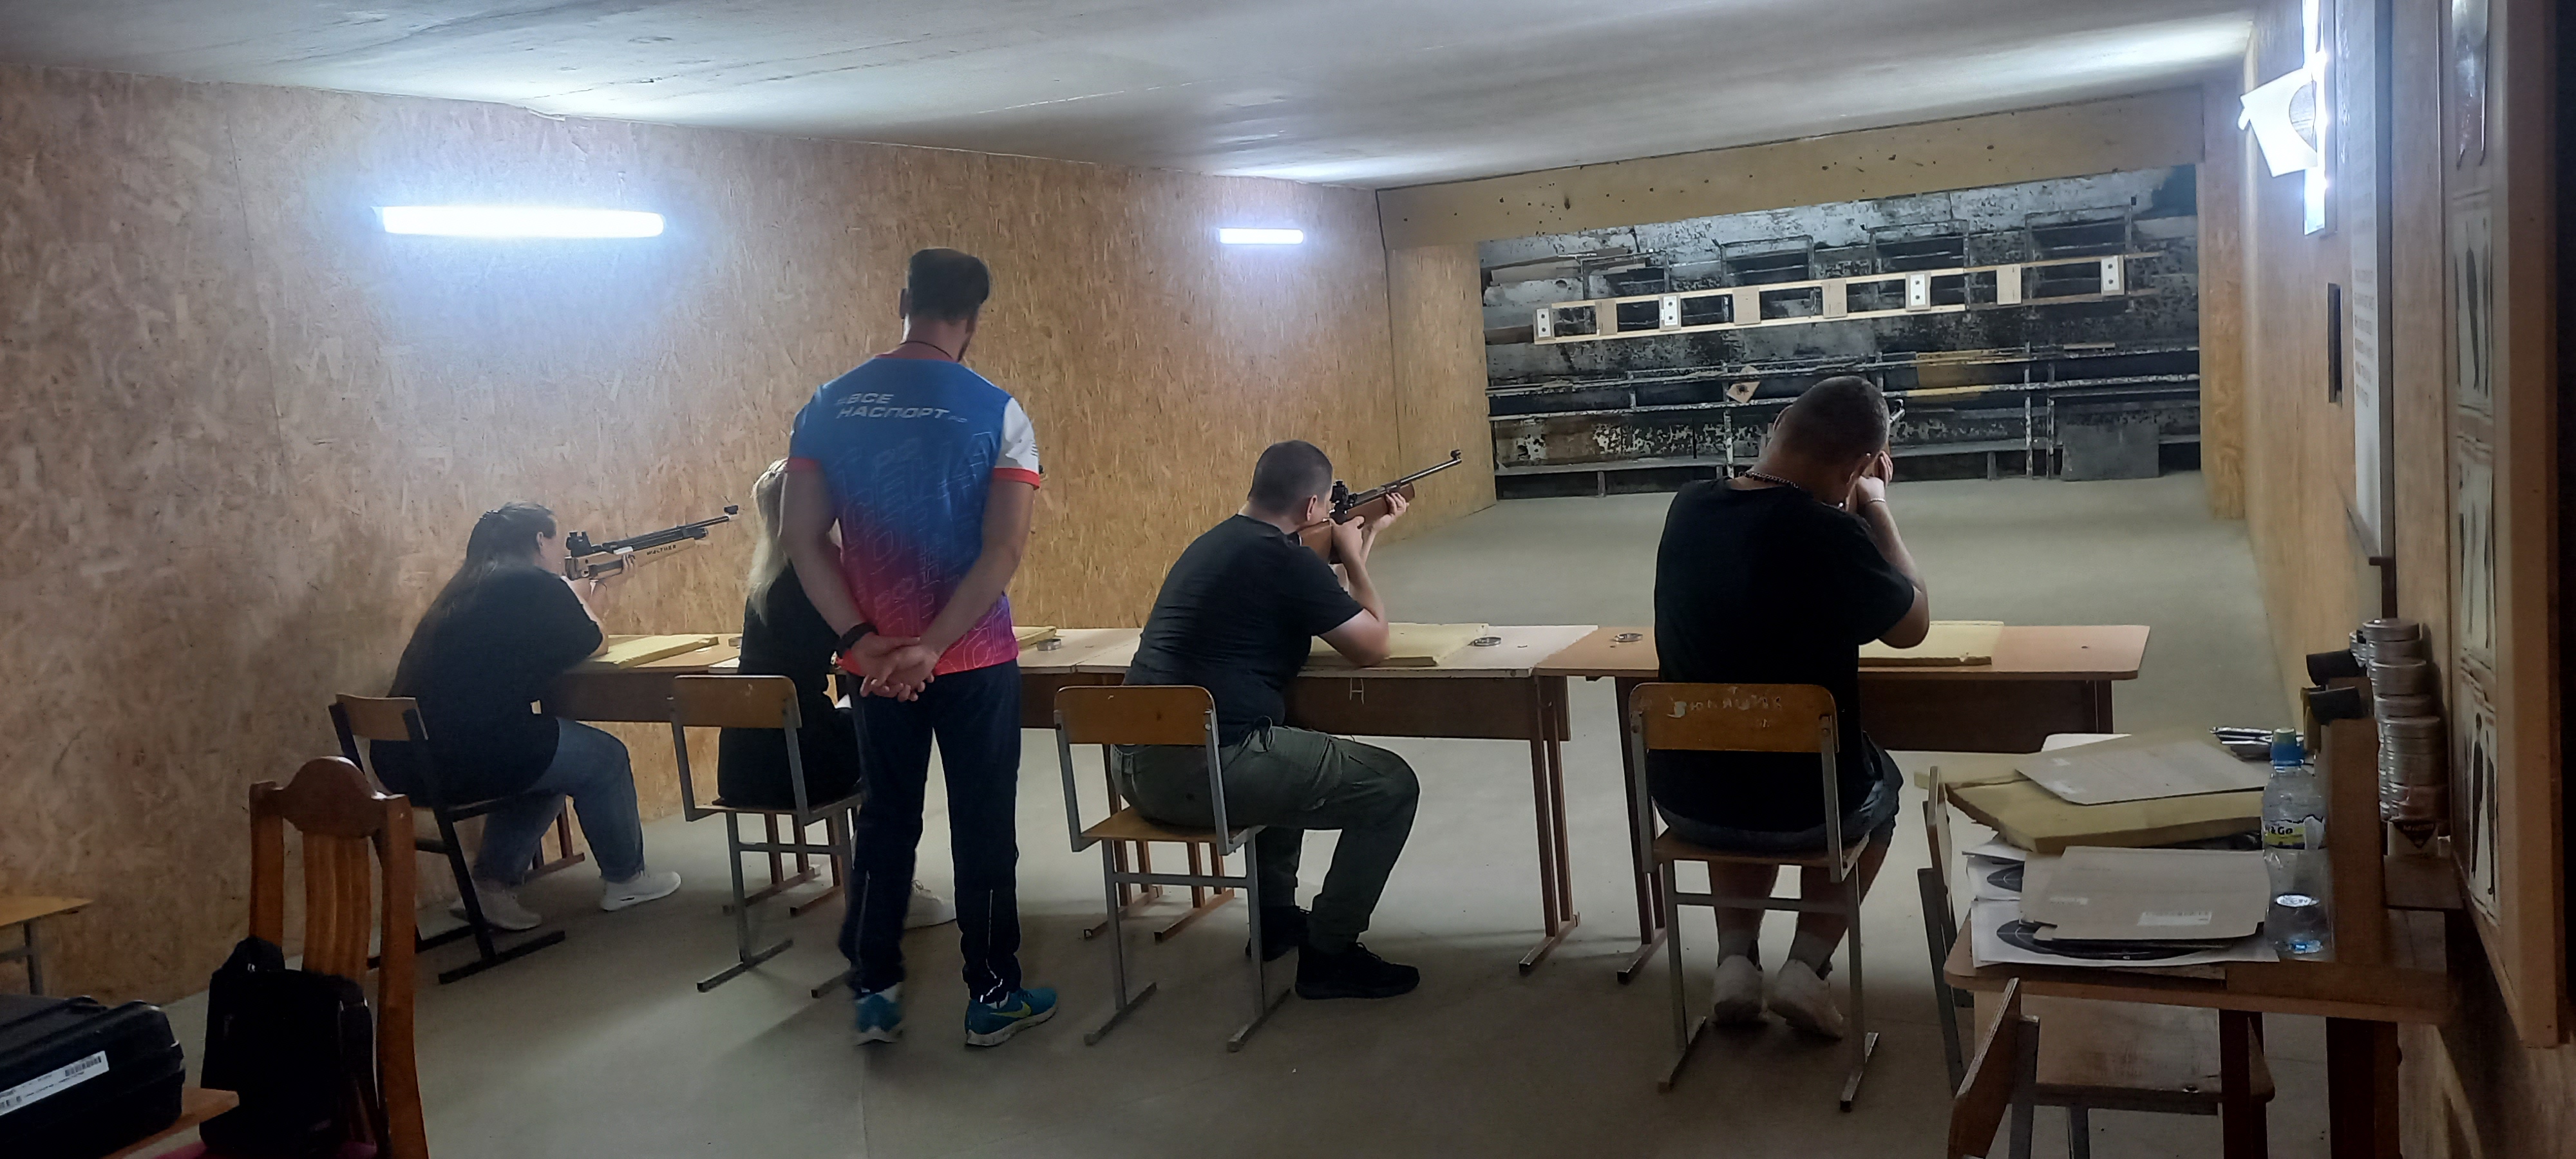 Команда Глуховской сельской территории приняла участие в соревнованиях по пулевой стрельбе.